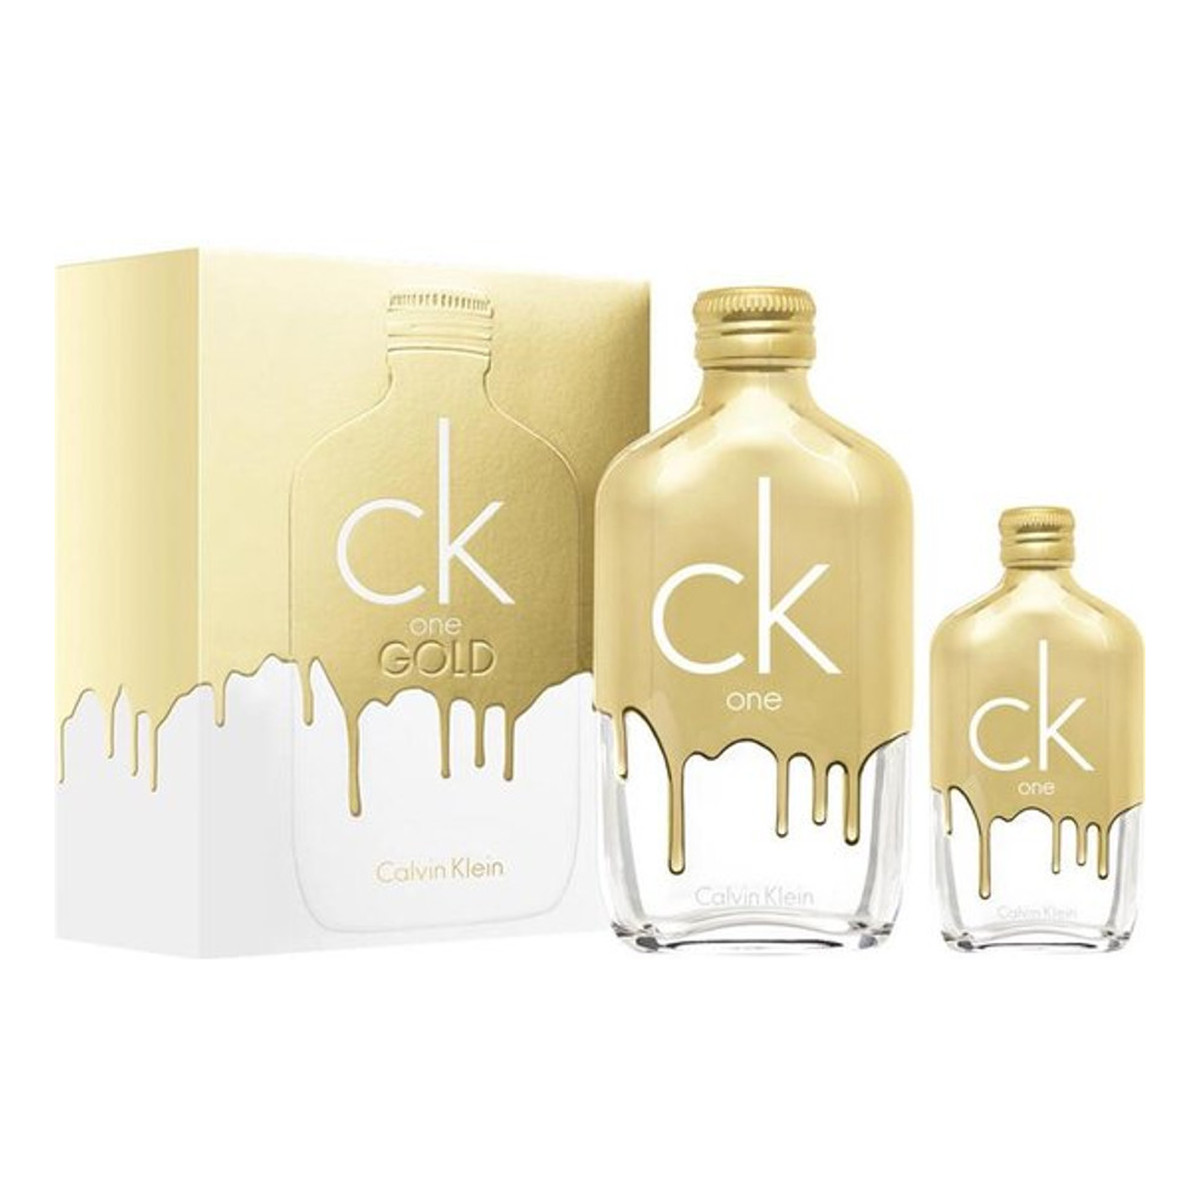 Calvin Klein CK One Gold Zestaw woda toaletowa spray 200ml + woda toaletowa spray 50ml